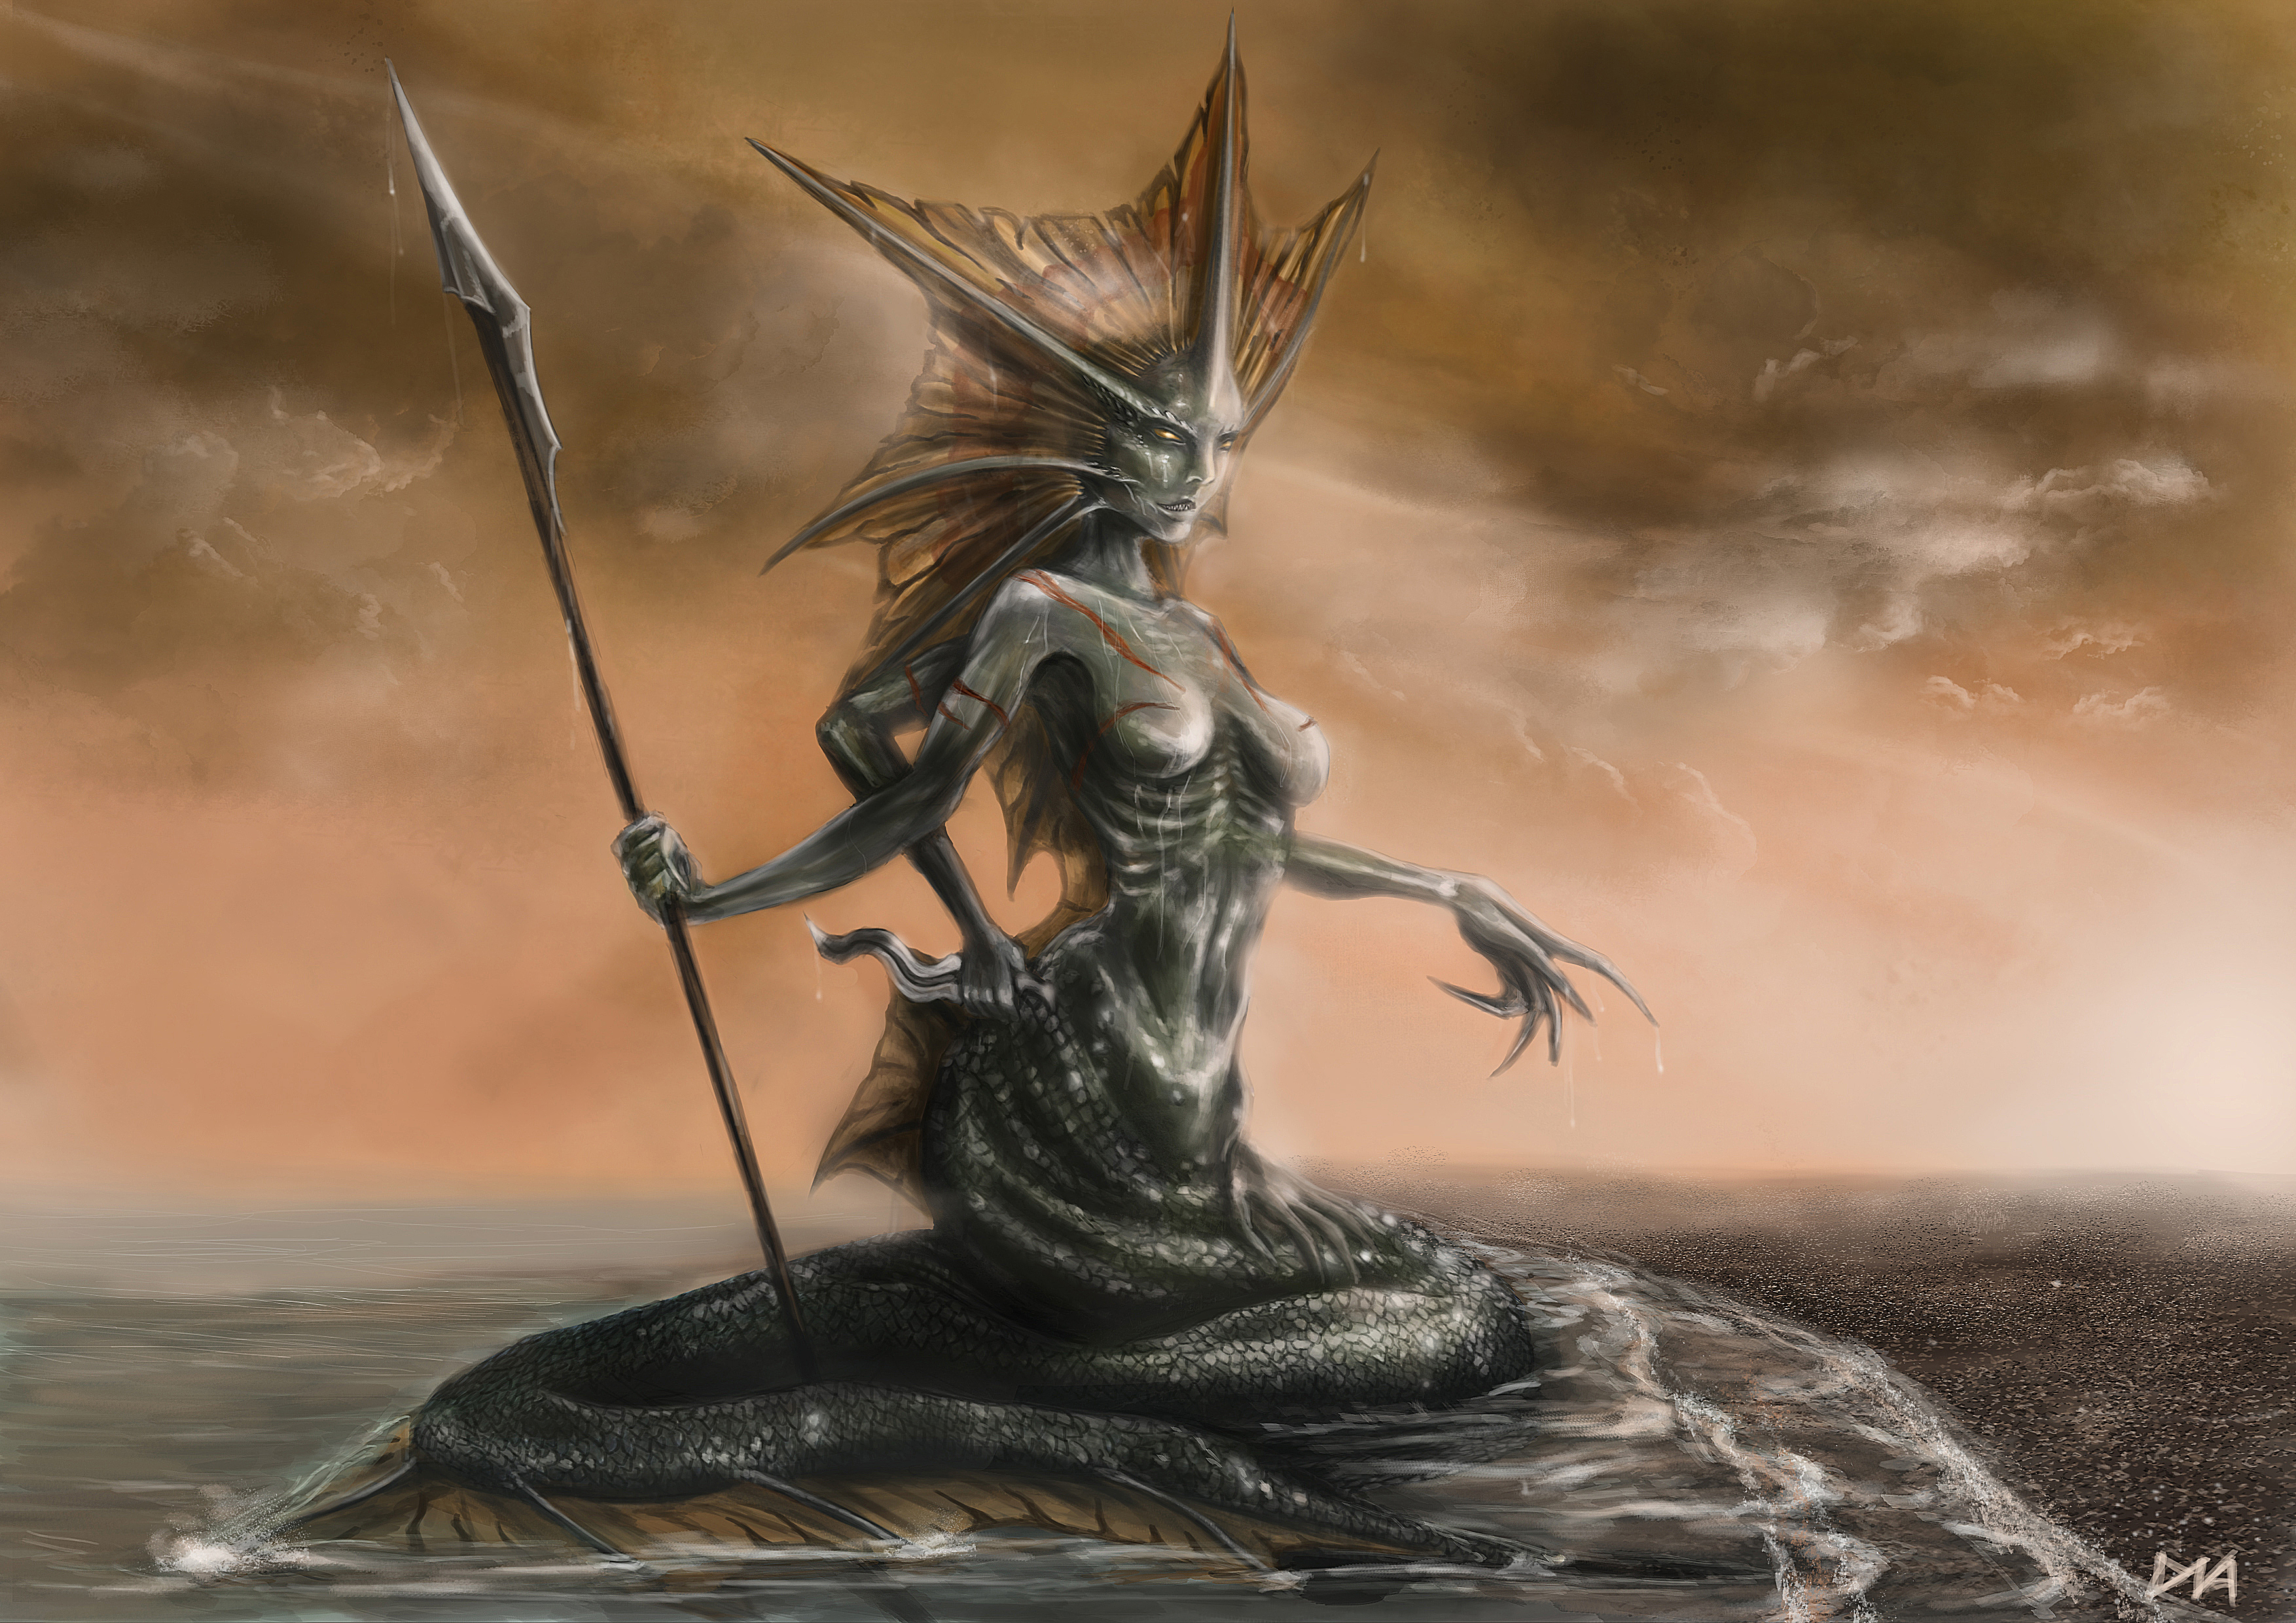 Hd Wallpaper - World Of Warcraft Naga Siren , HD Wallpaper & Backgrounds